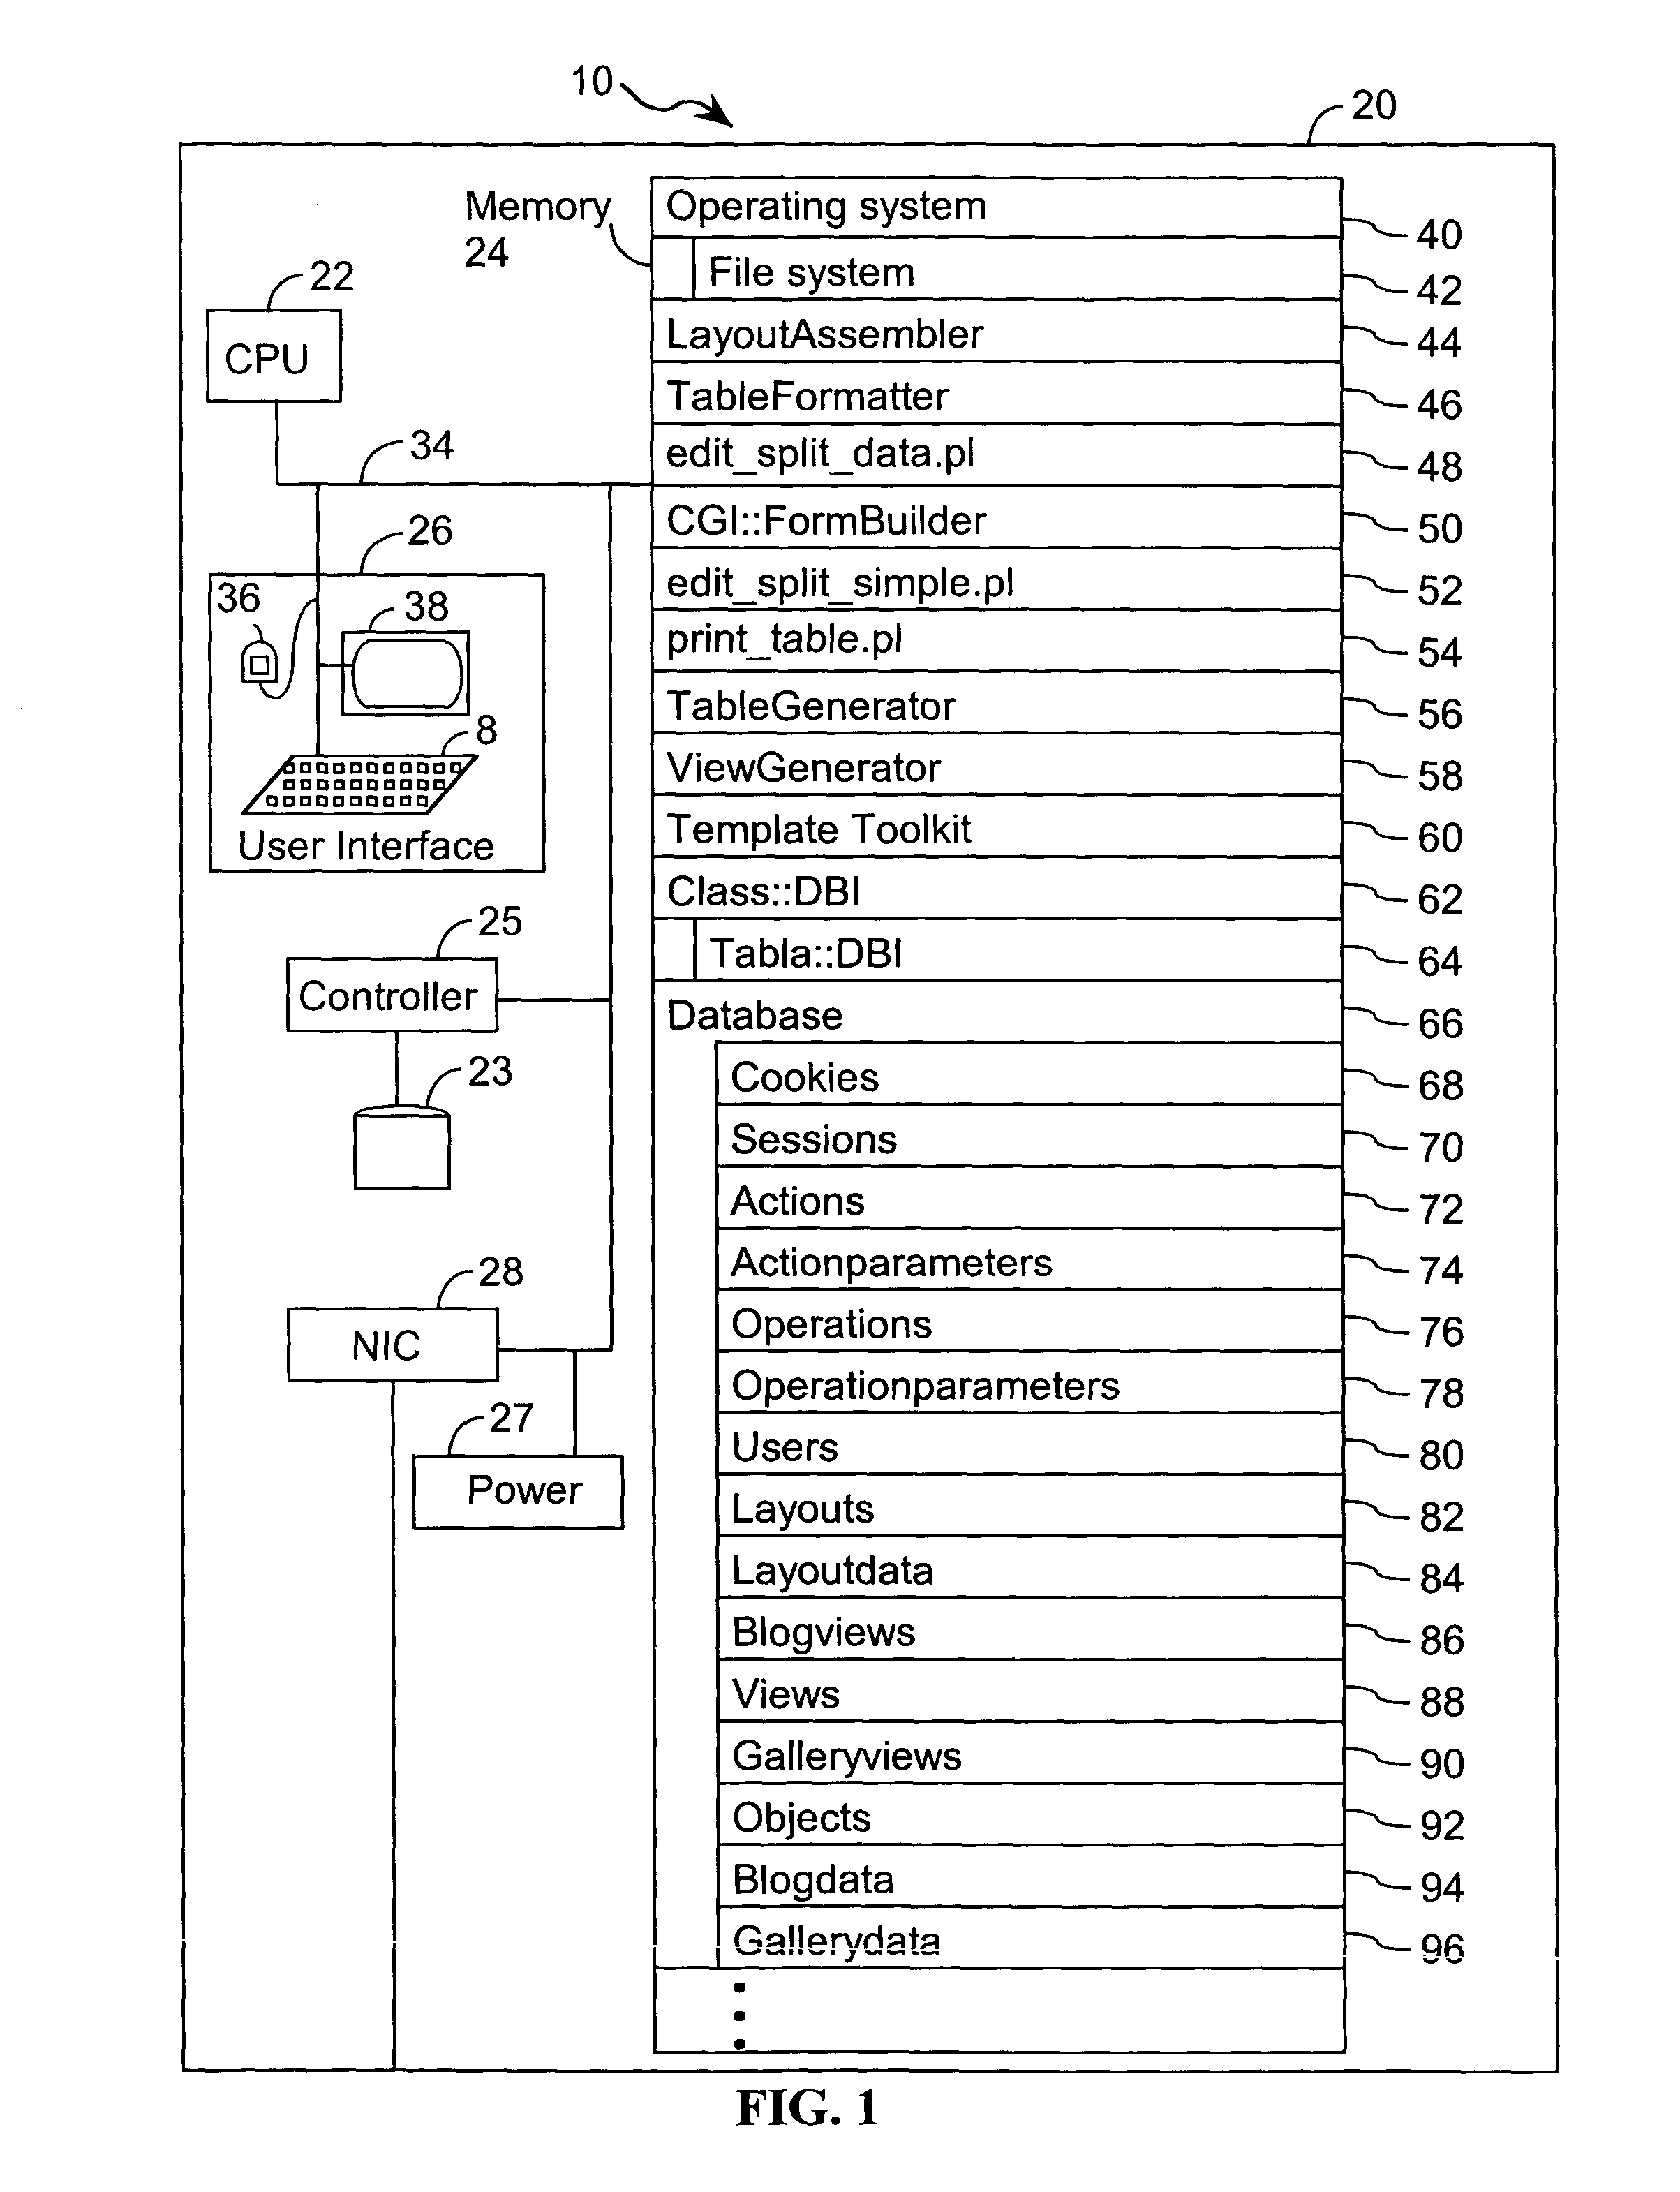 Computer systems and methods for platform independent presentation design